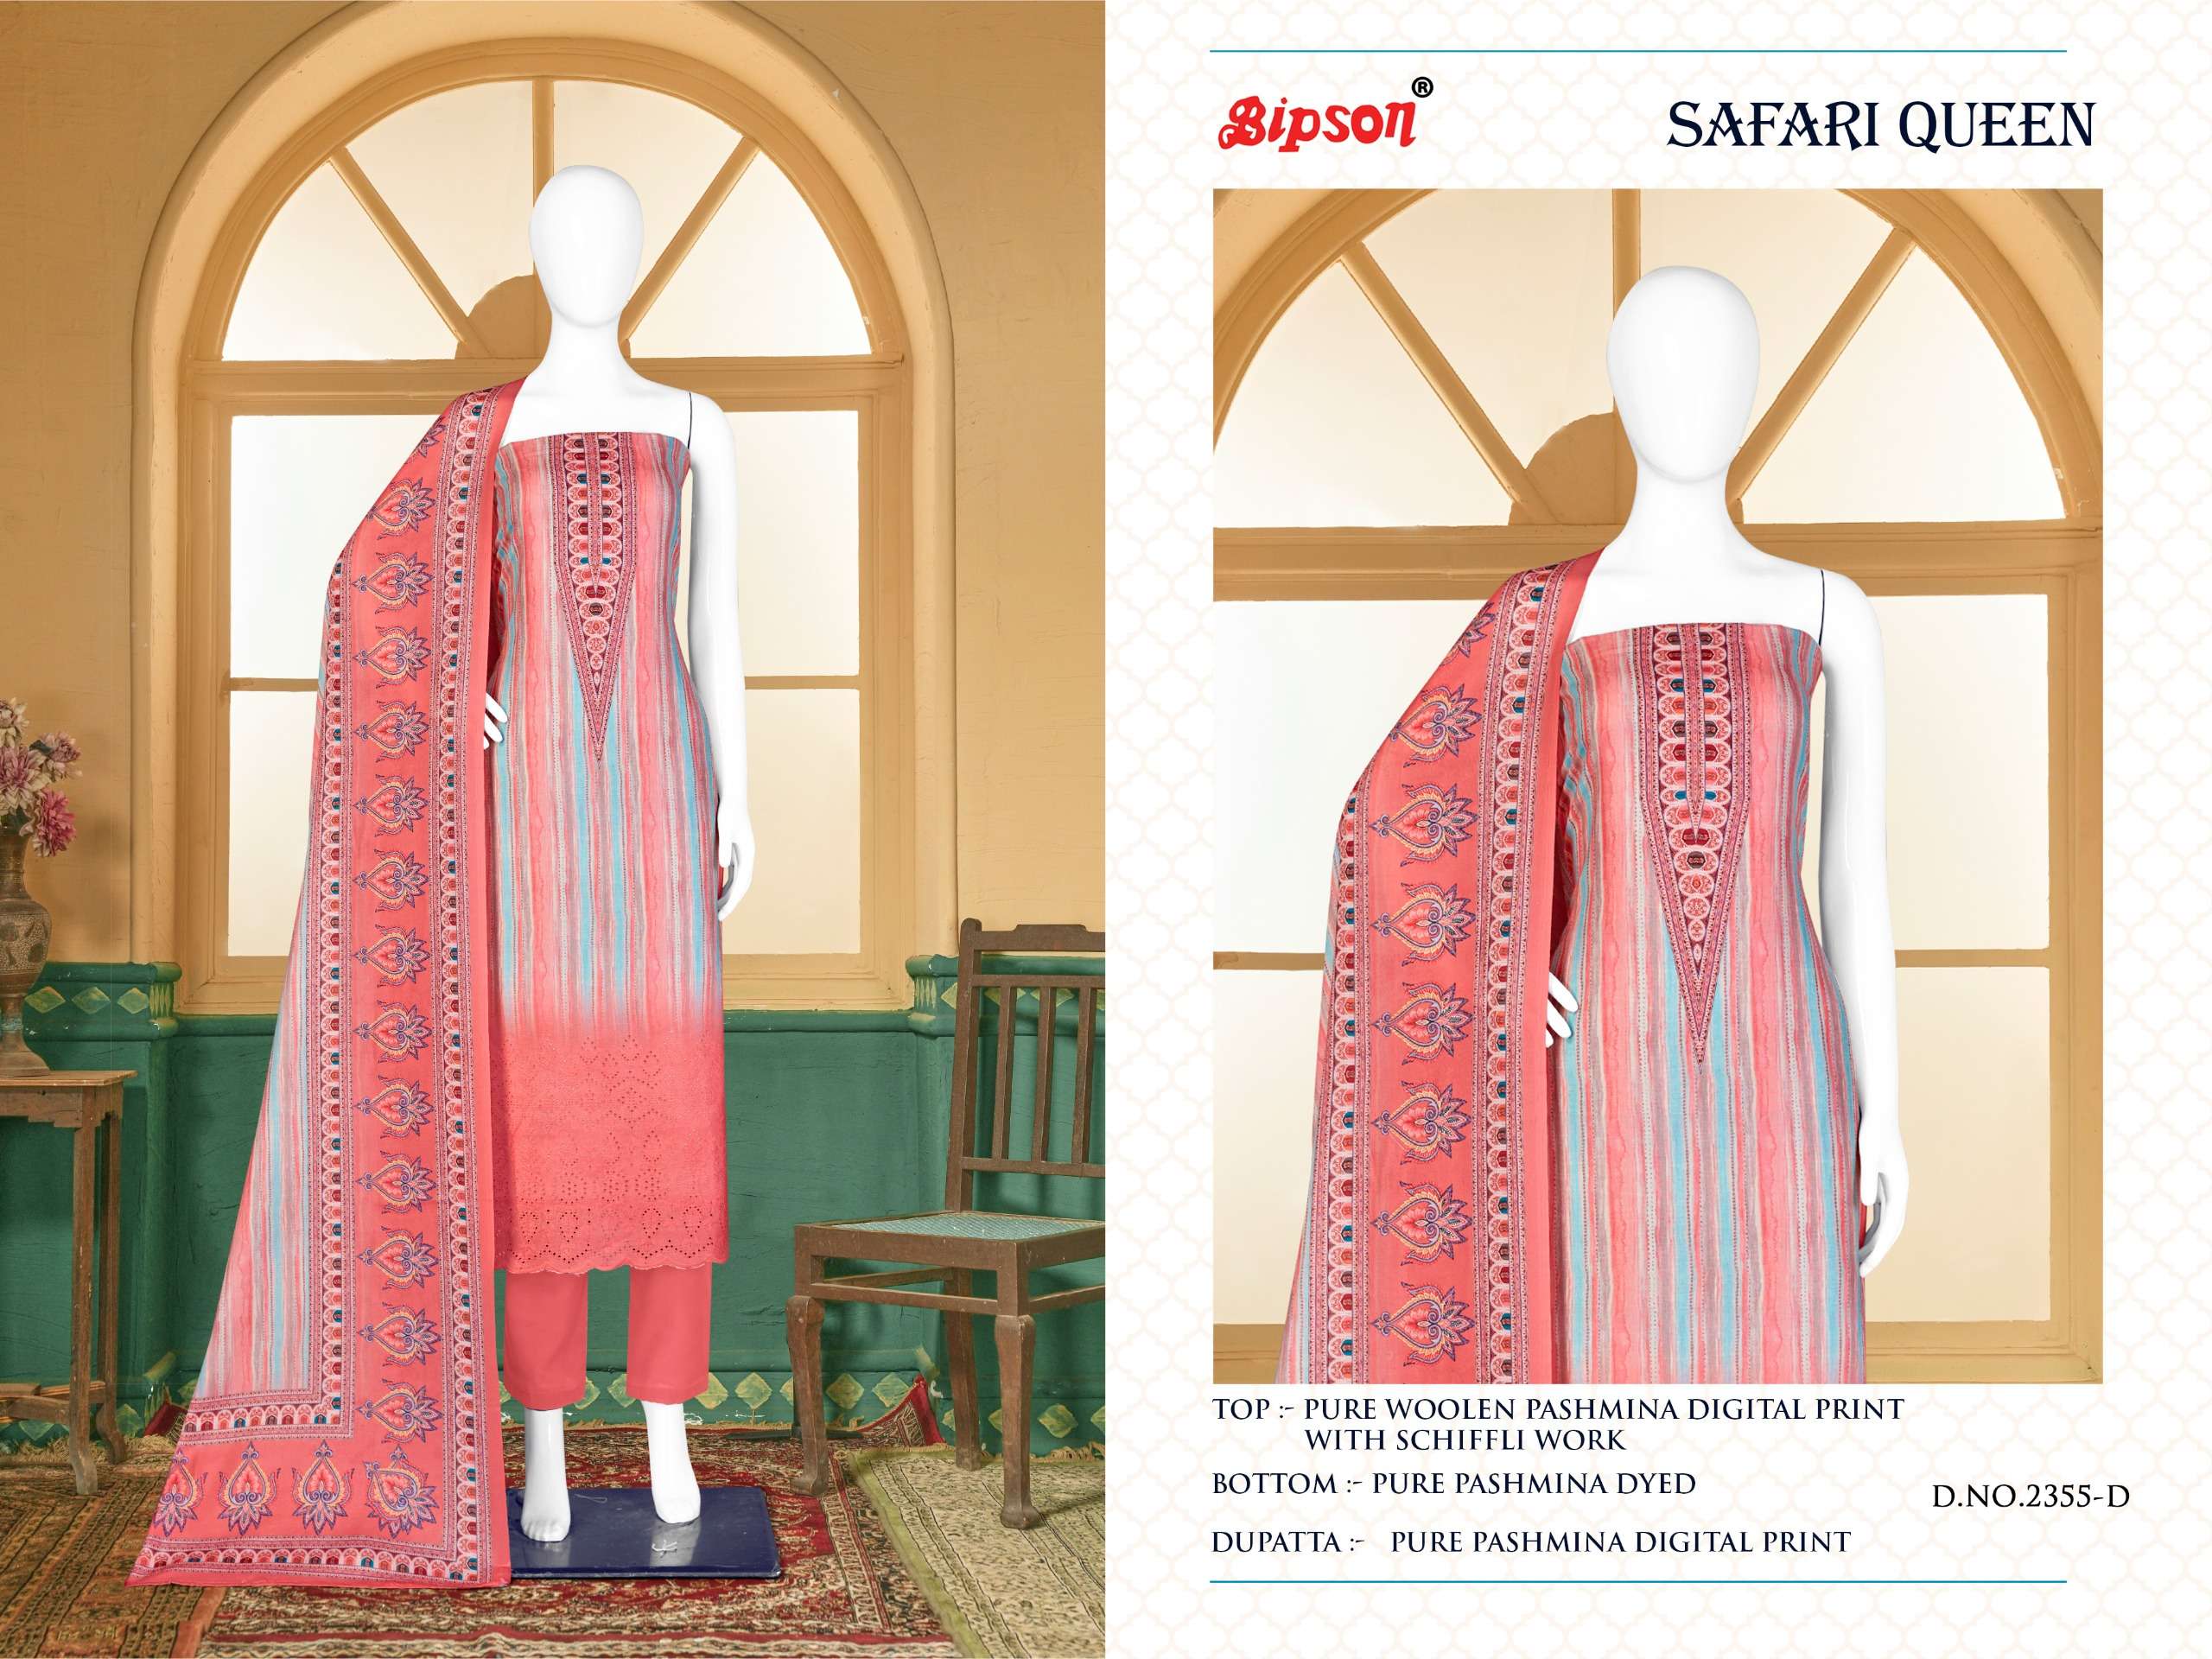 Bipson Safari Queen 2355 Wool Pashmina Dress Material Wholesale catalog